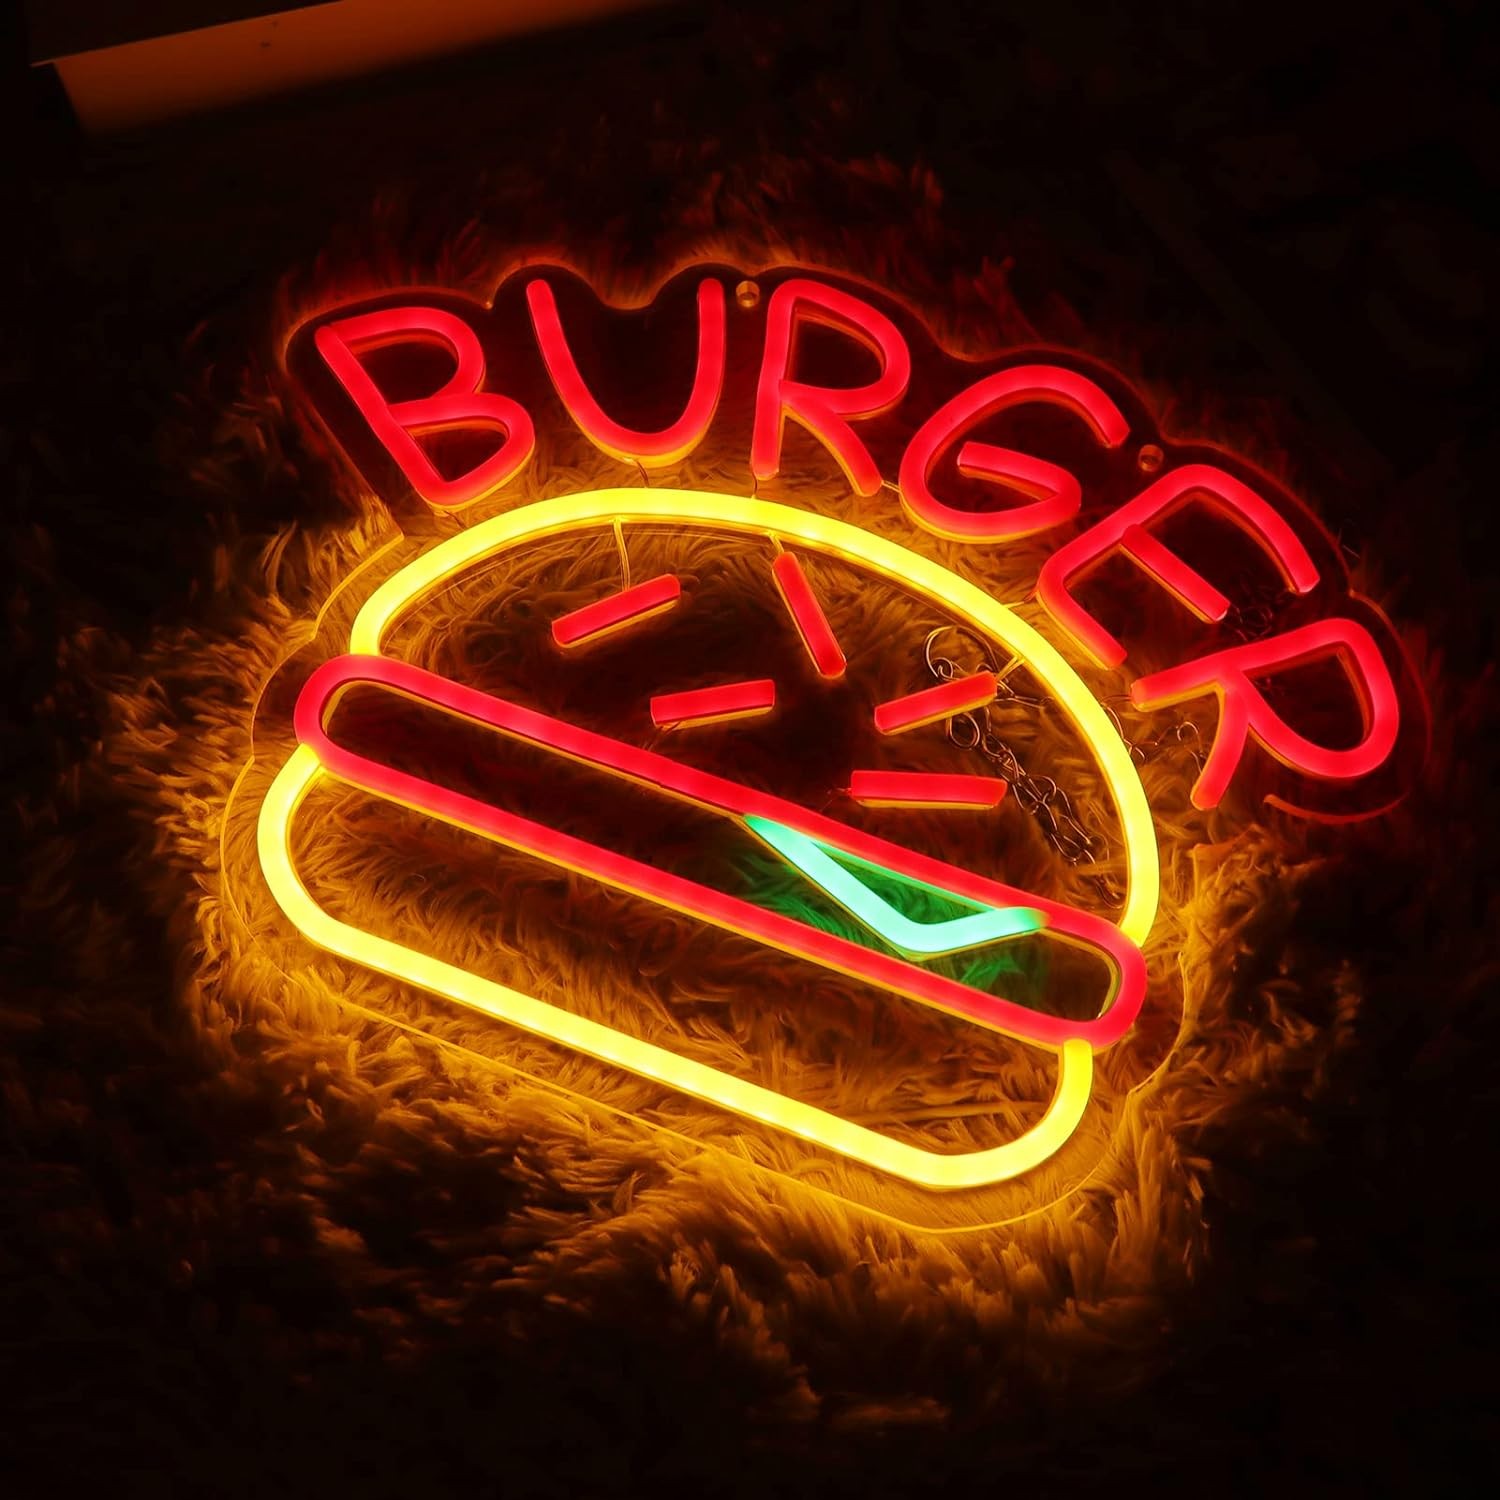 Φωτεινή φωτεινή επιγραφή LED διαφημιστική Burger